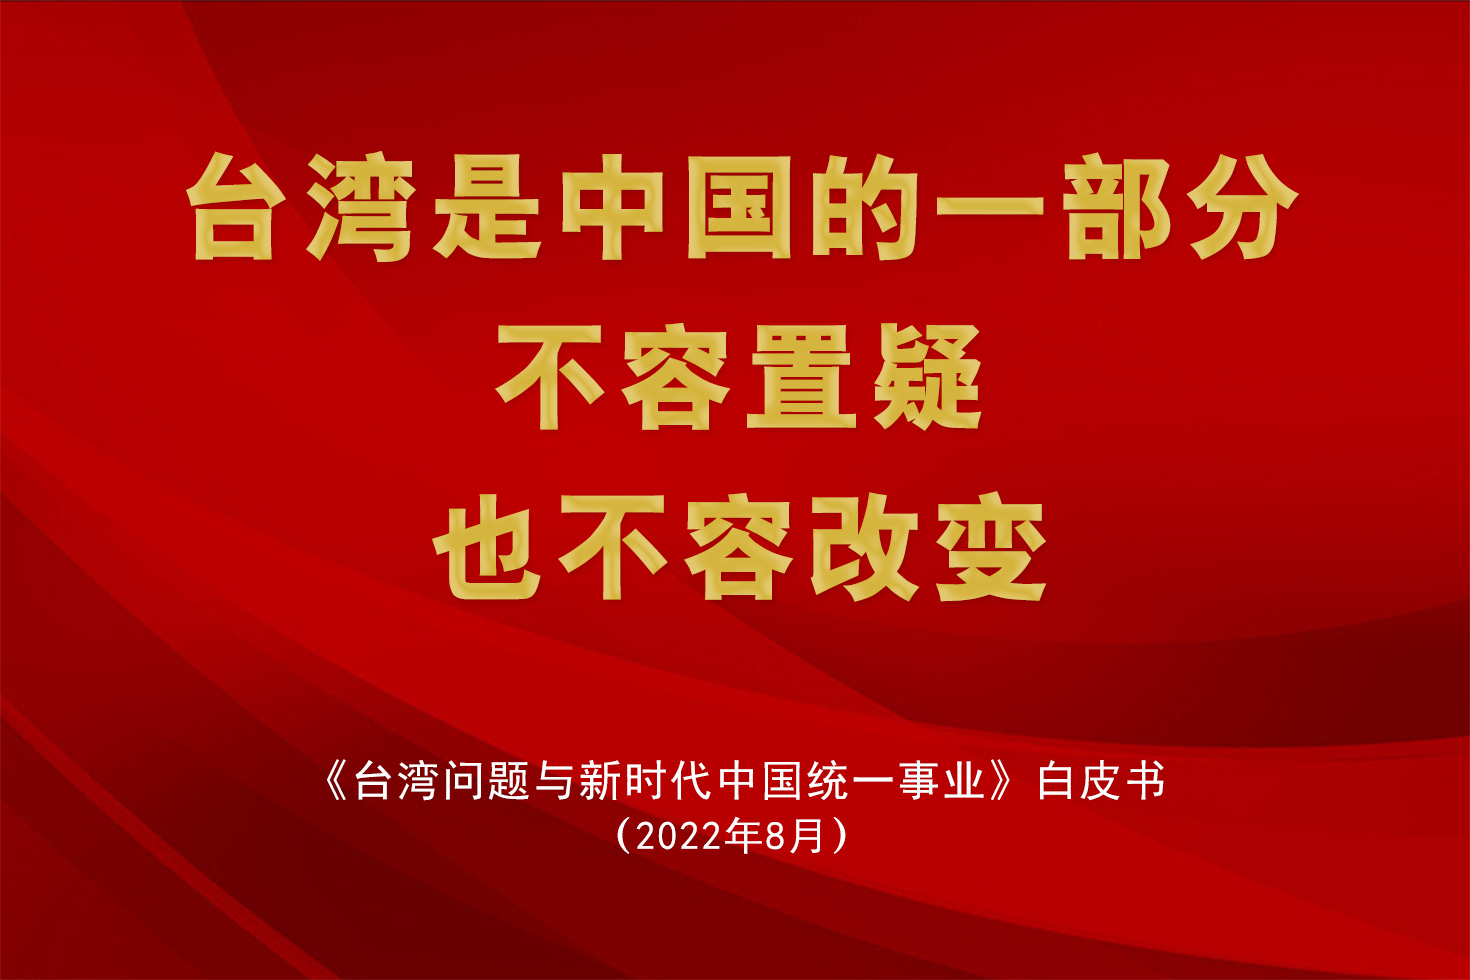 中国共产党是民族复兴、国家统一的坚强领导核心